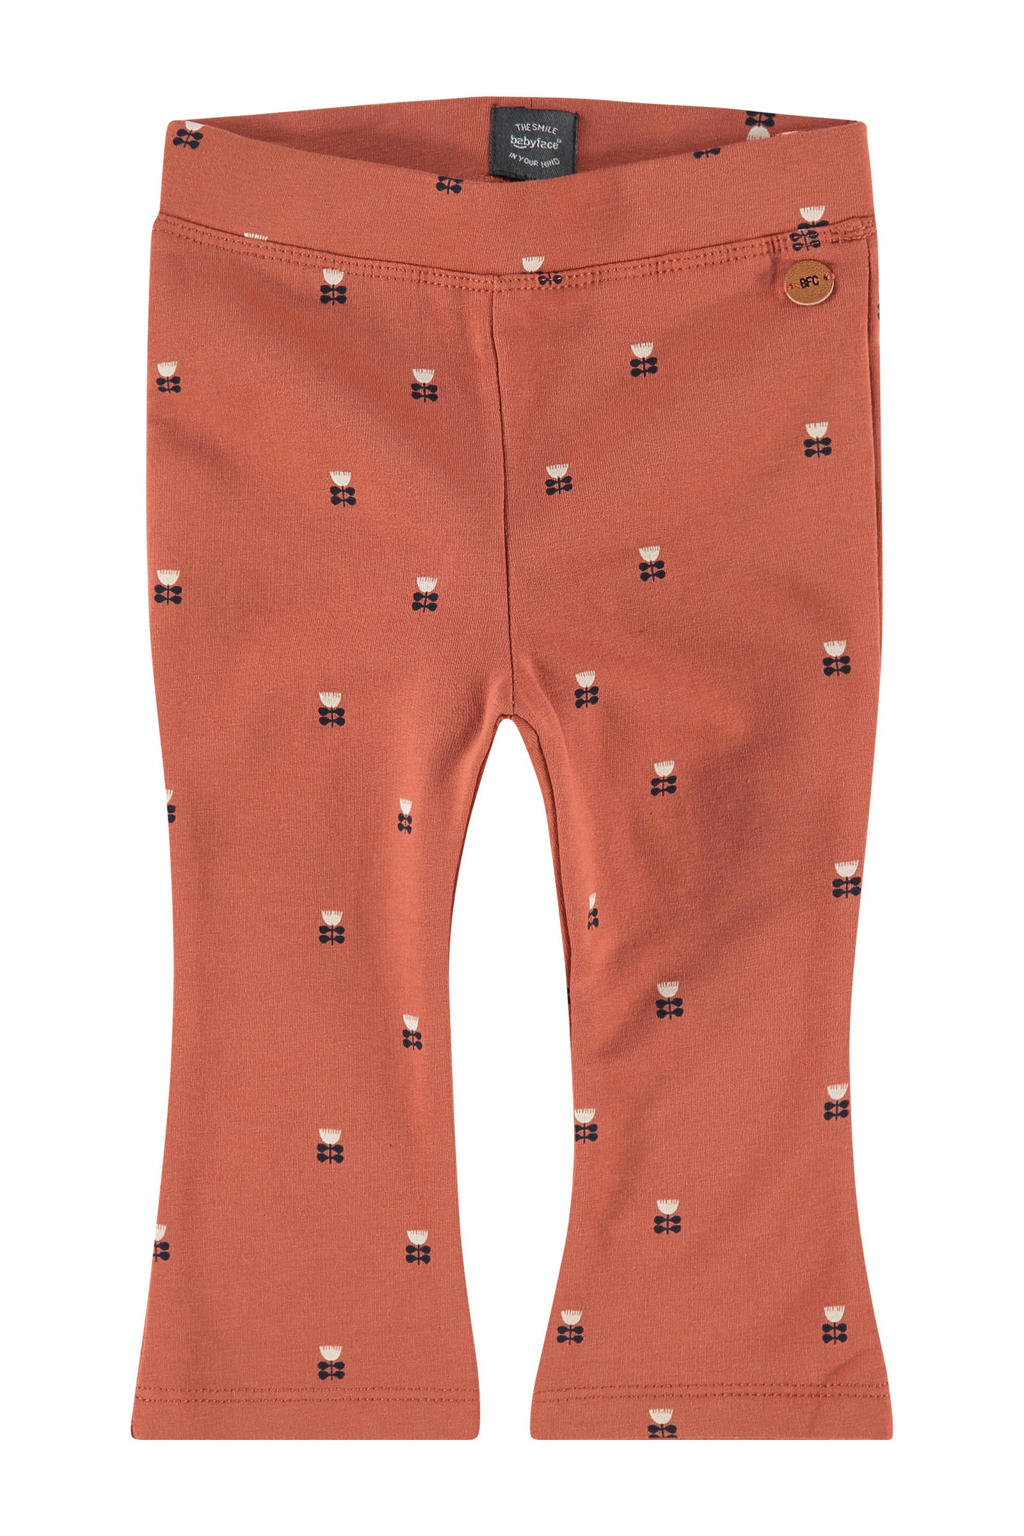 Oranje meisjes Babyface flared broek van sweat materiaal met regular waist en elastische tailleband